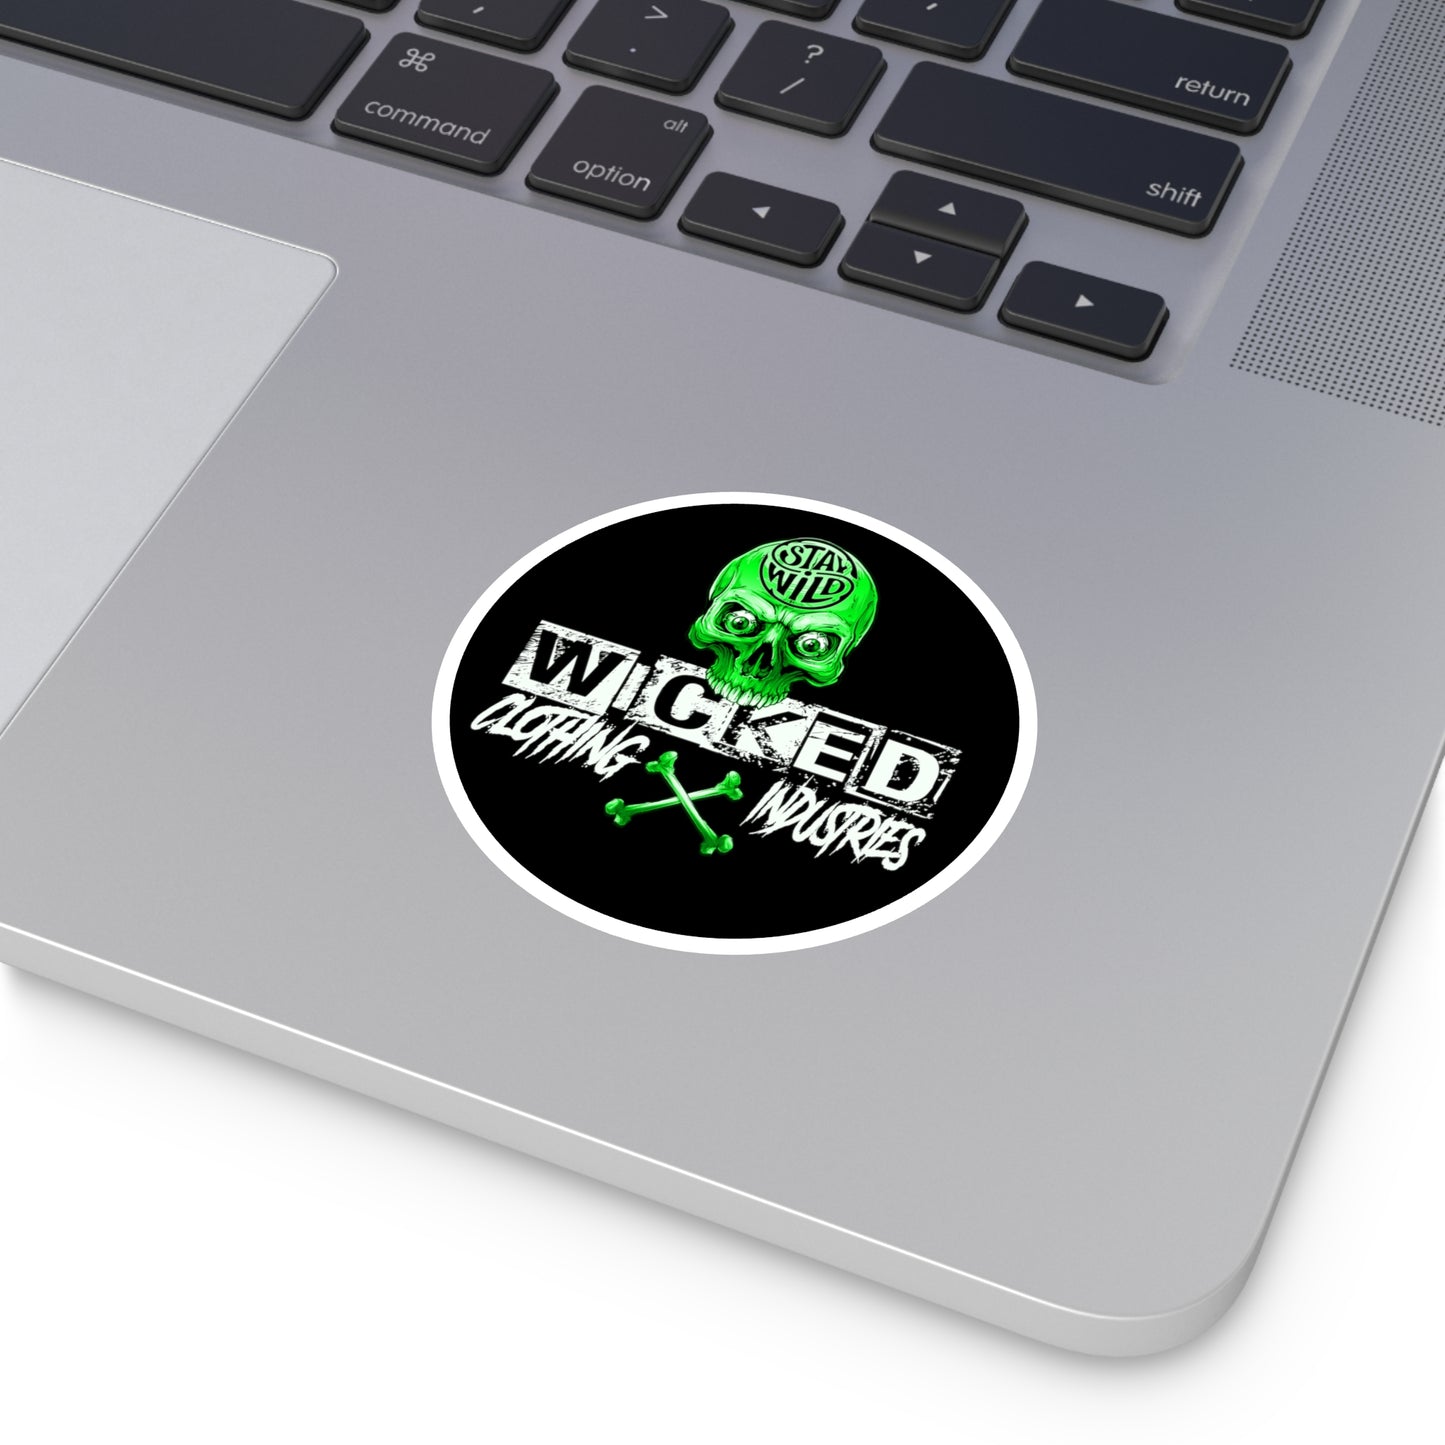 Stay Wild Neon Green WCI  Stickers, Indoor\Outdoor